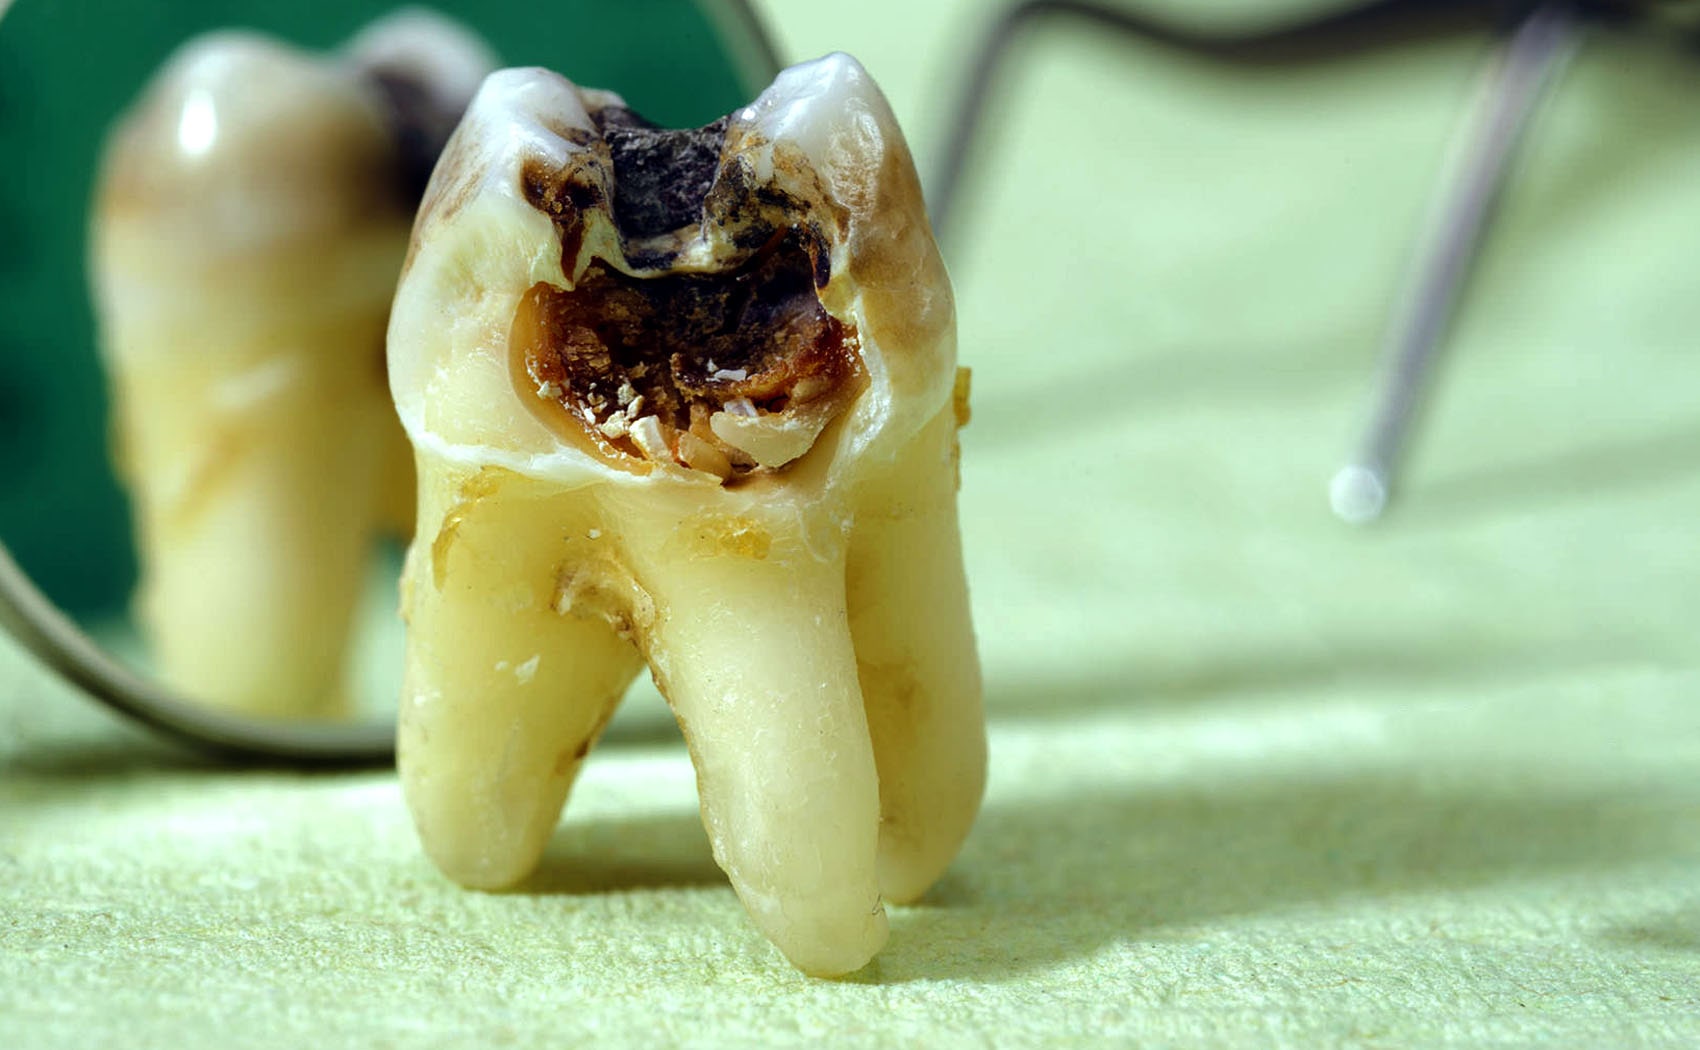 اگر می خواهید دچار پوسیدگی دندان نشوید این مواد غذایی را کمتر مصرف کنید